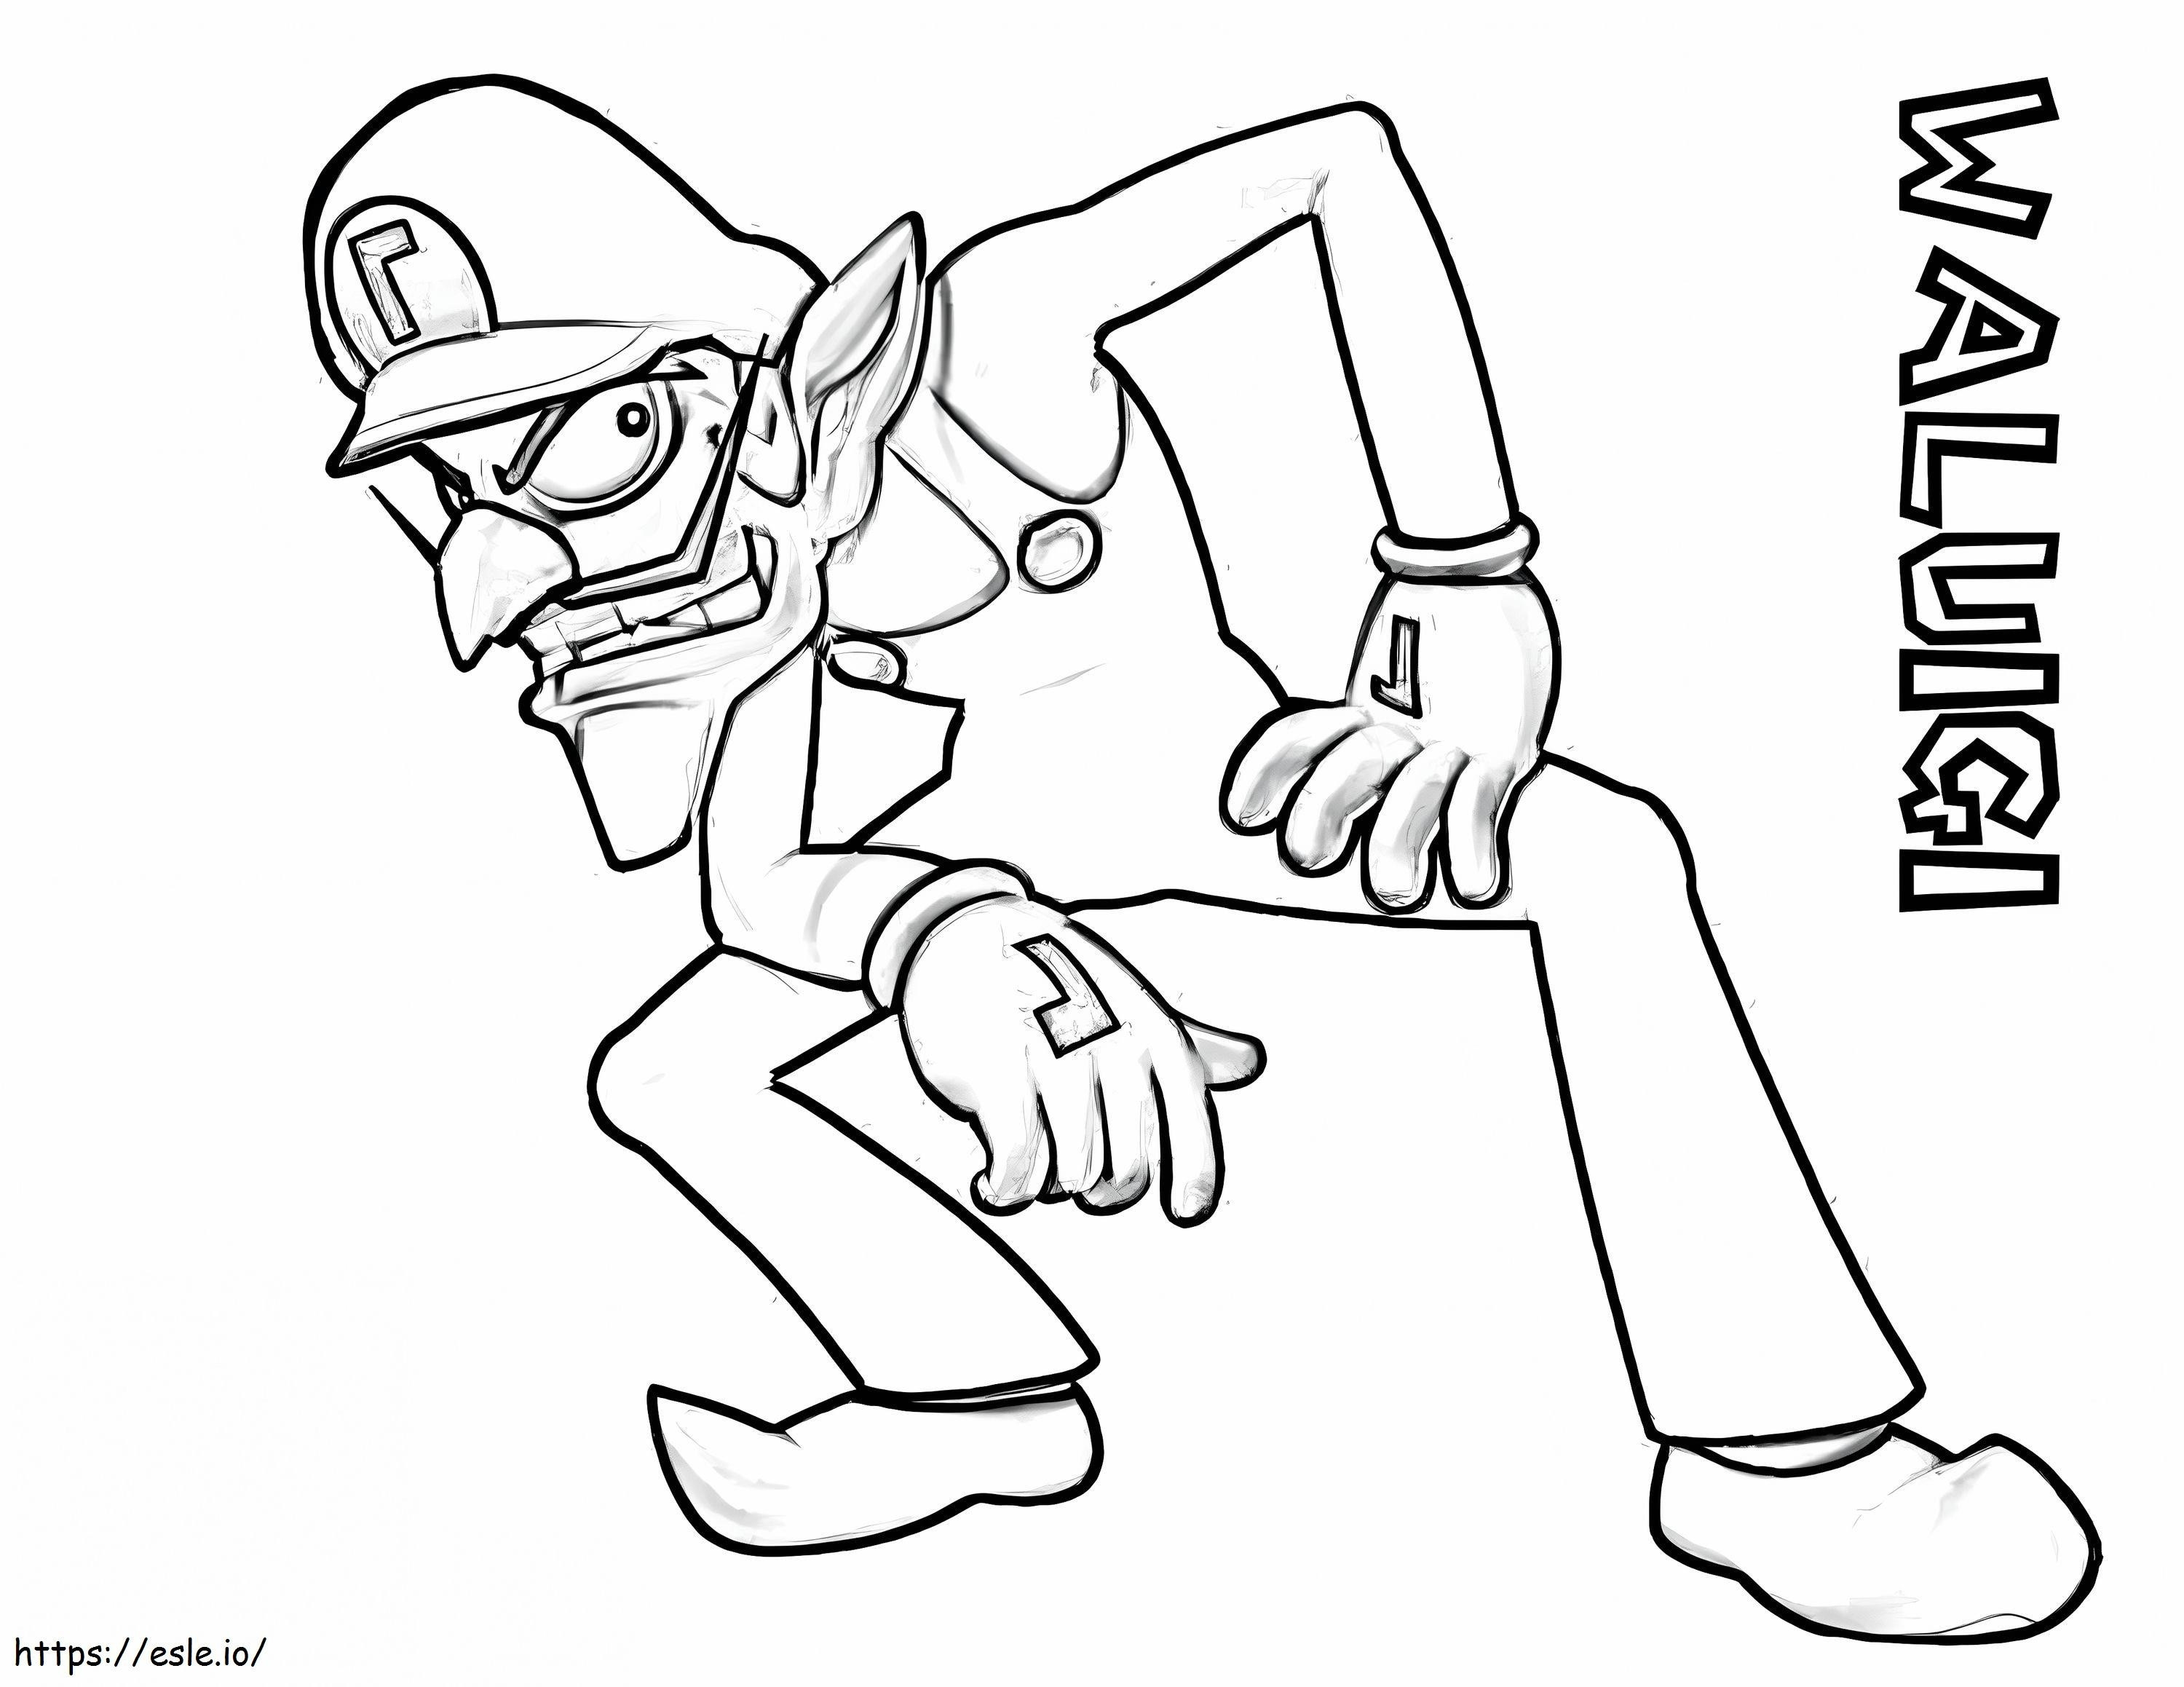 Waluigi z Super Mario 1 kolorowanka